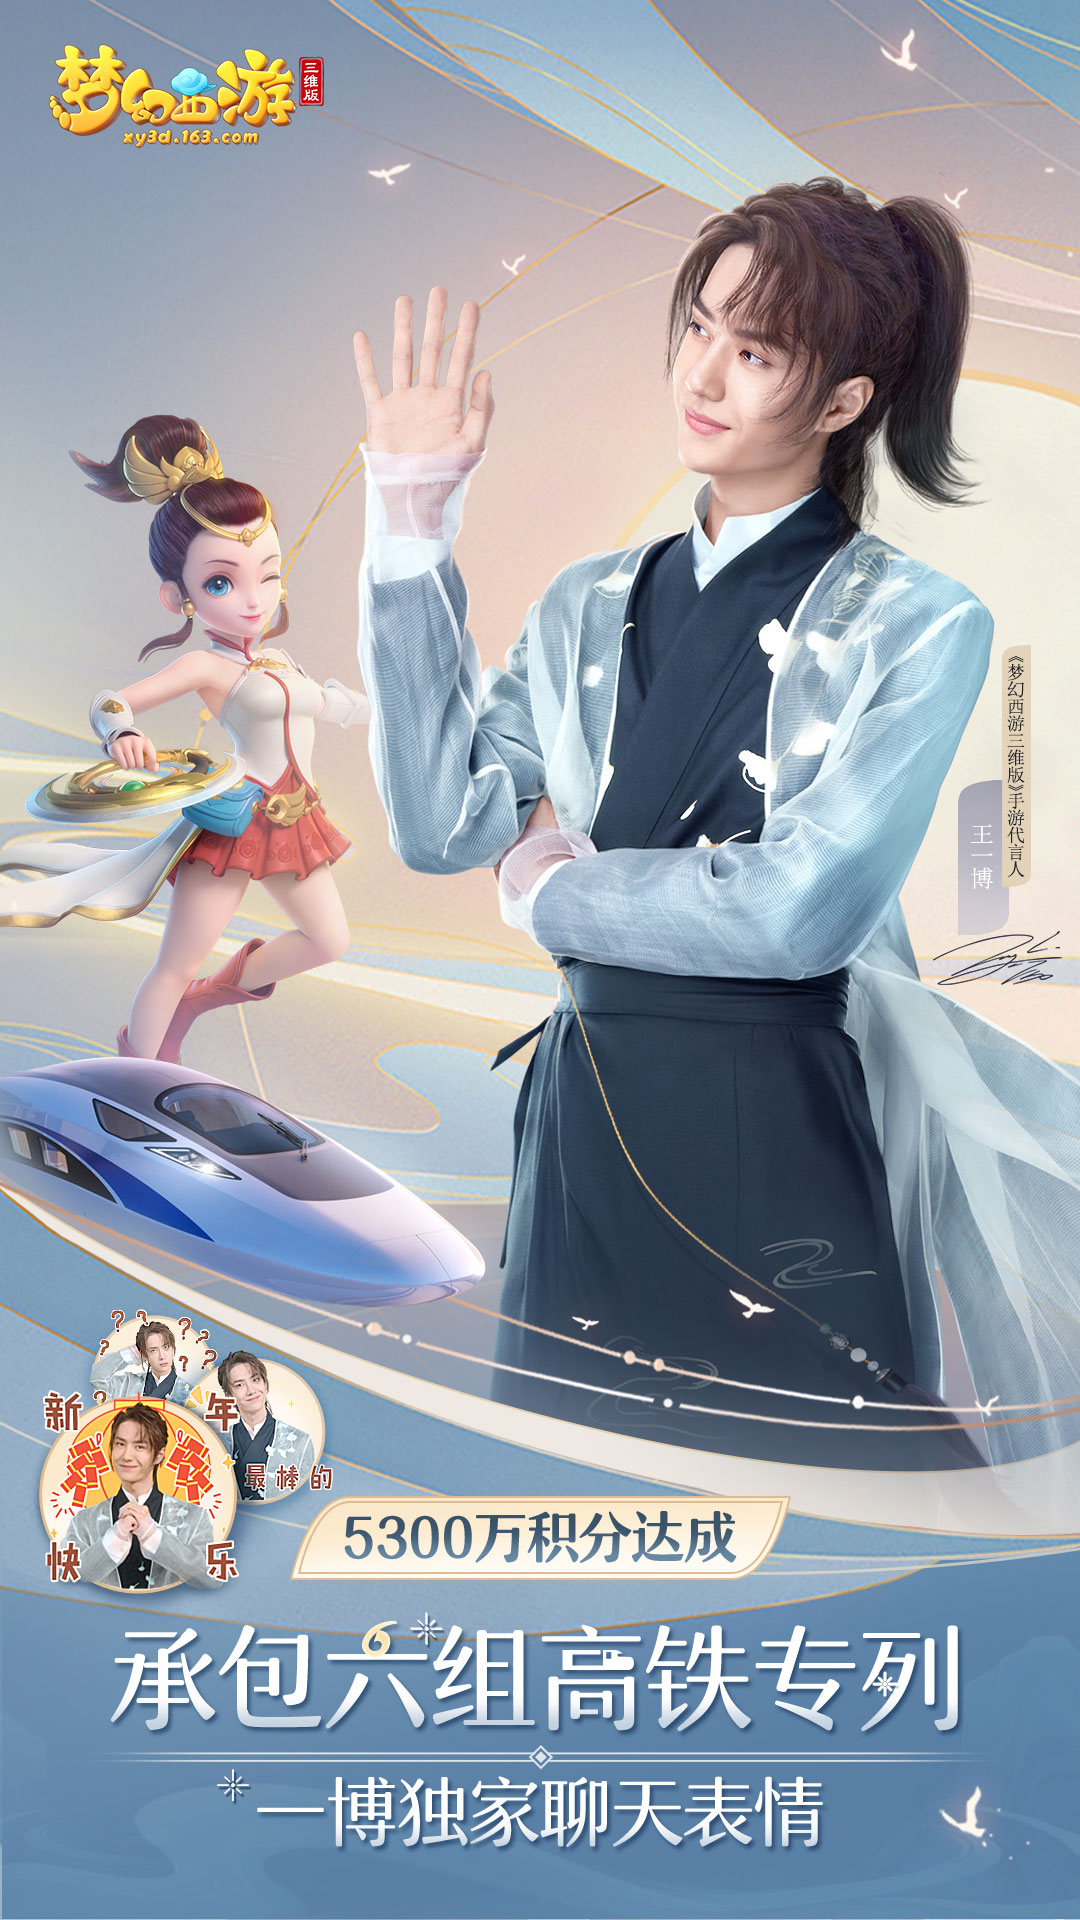 连接北上广深，《梦幻西游三维版》春节主题专列把梦送回家!